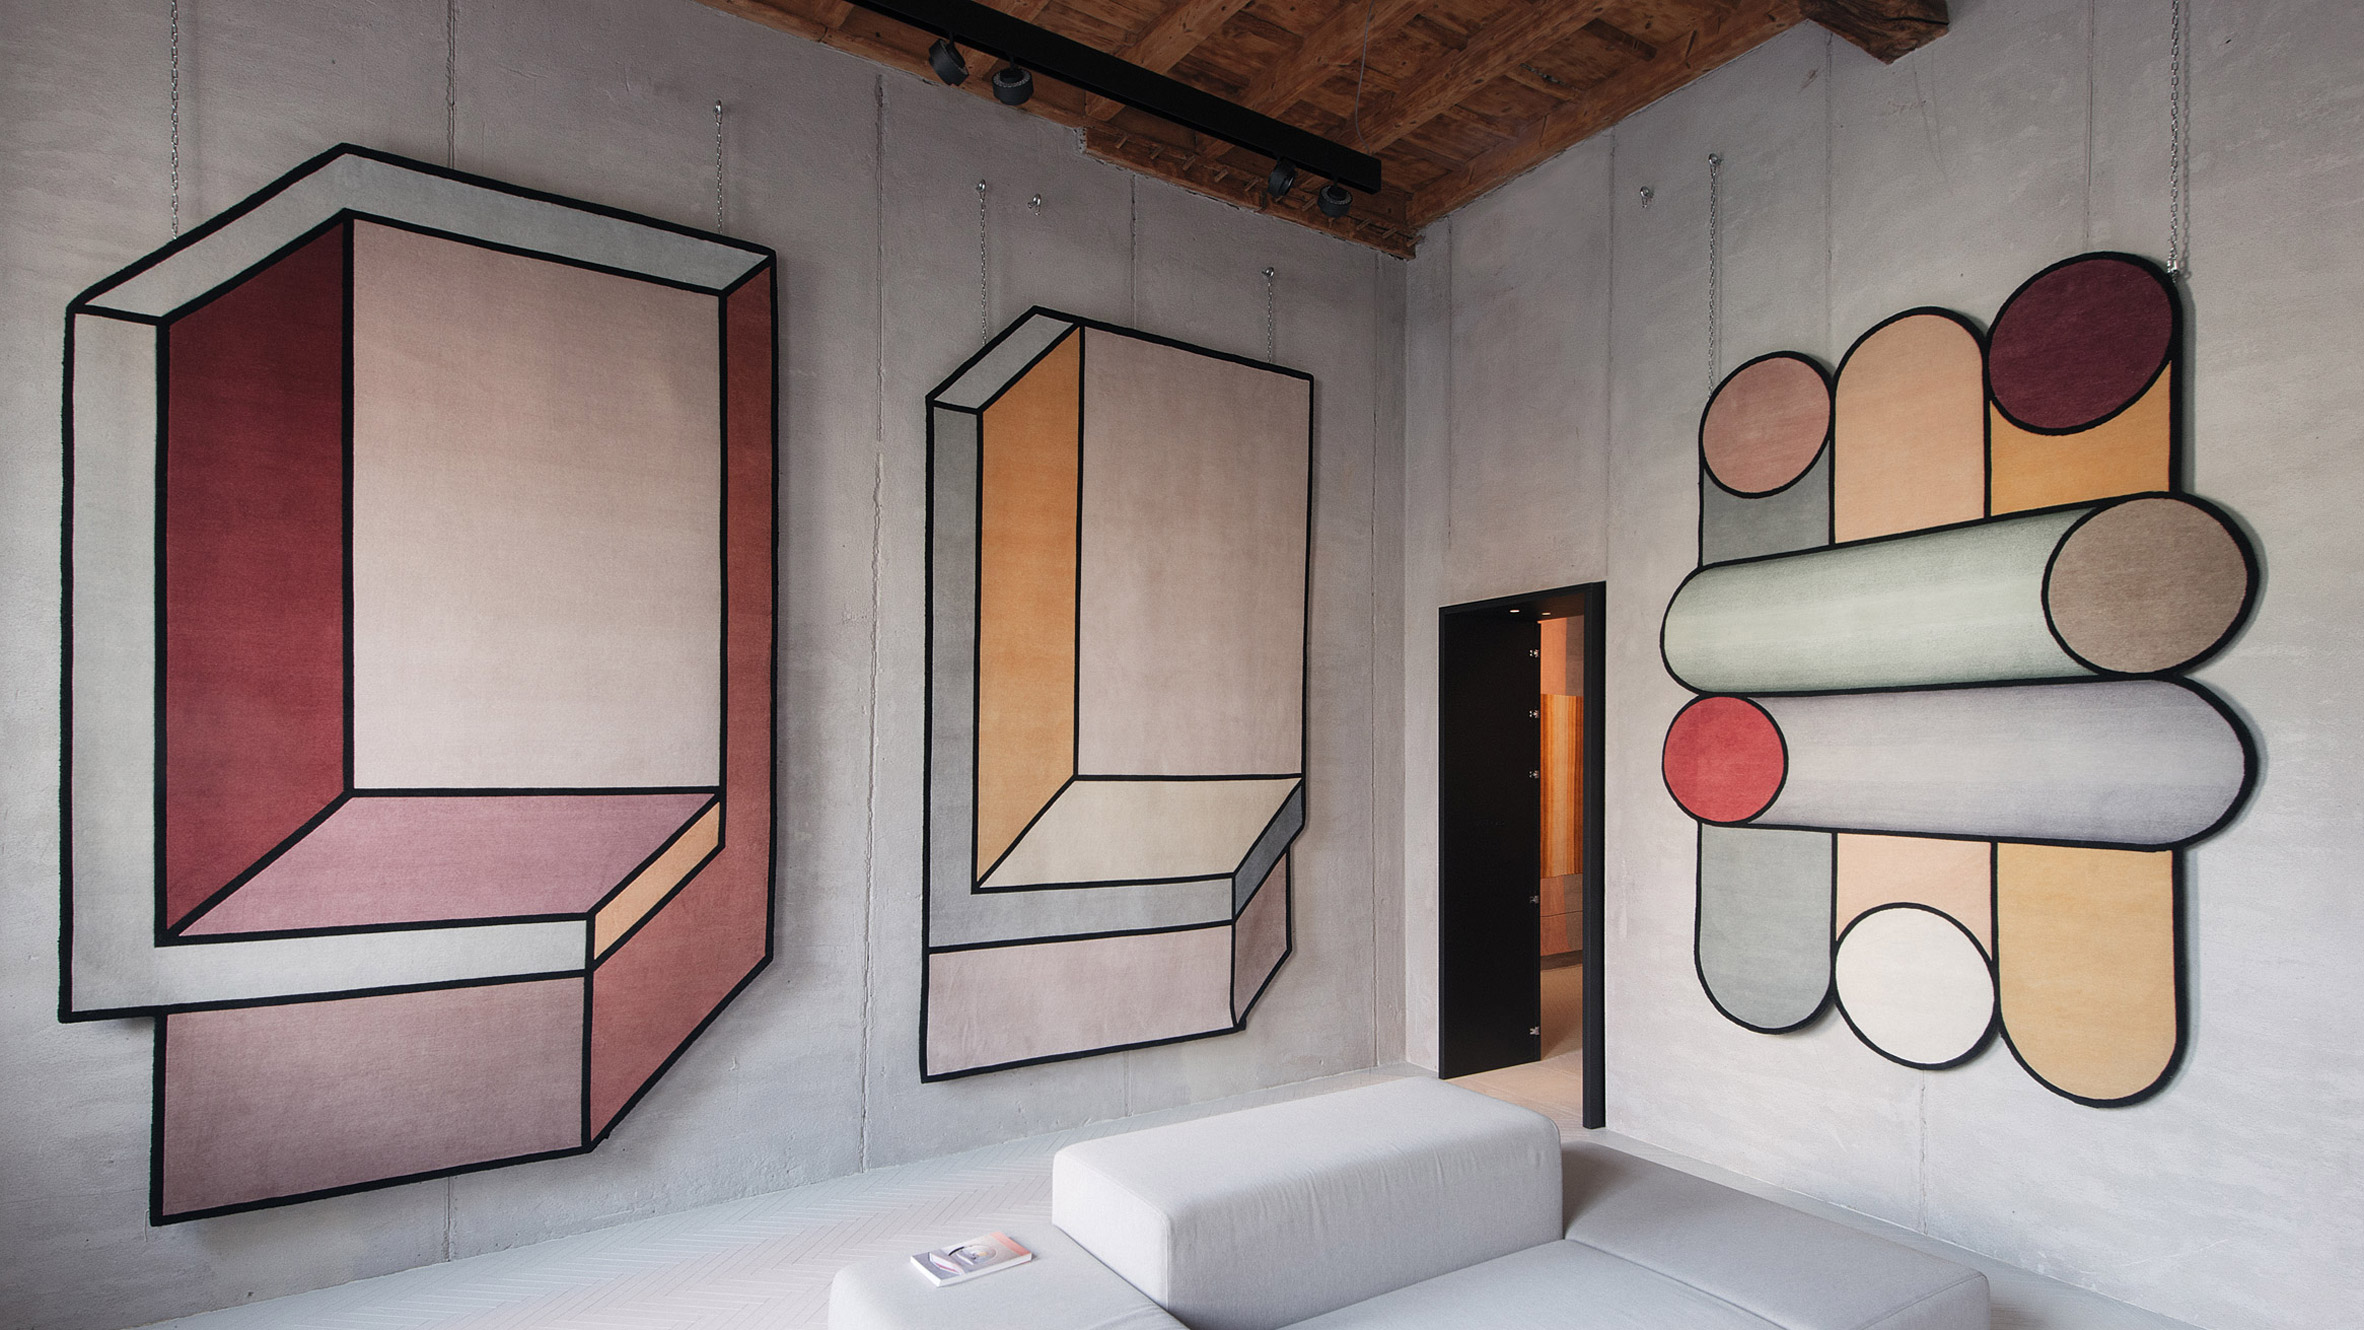 Patricia Urquiola Frankfurt Interiors Feature Some of Her Greatest Designs